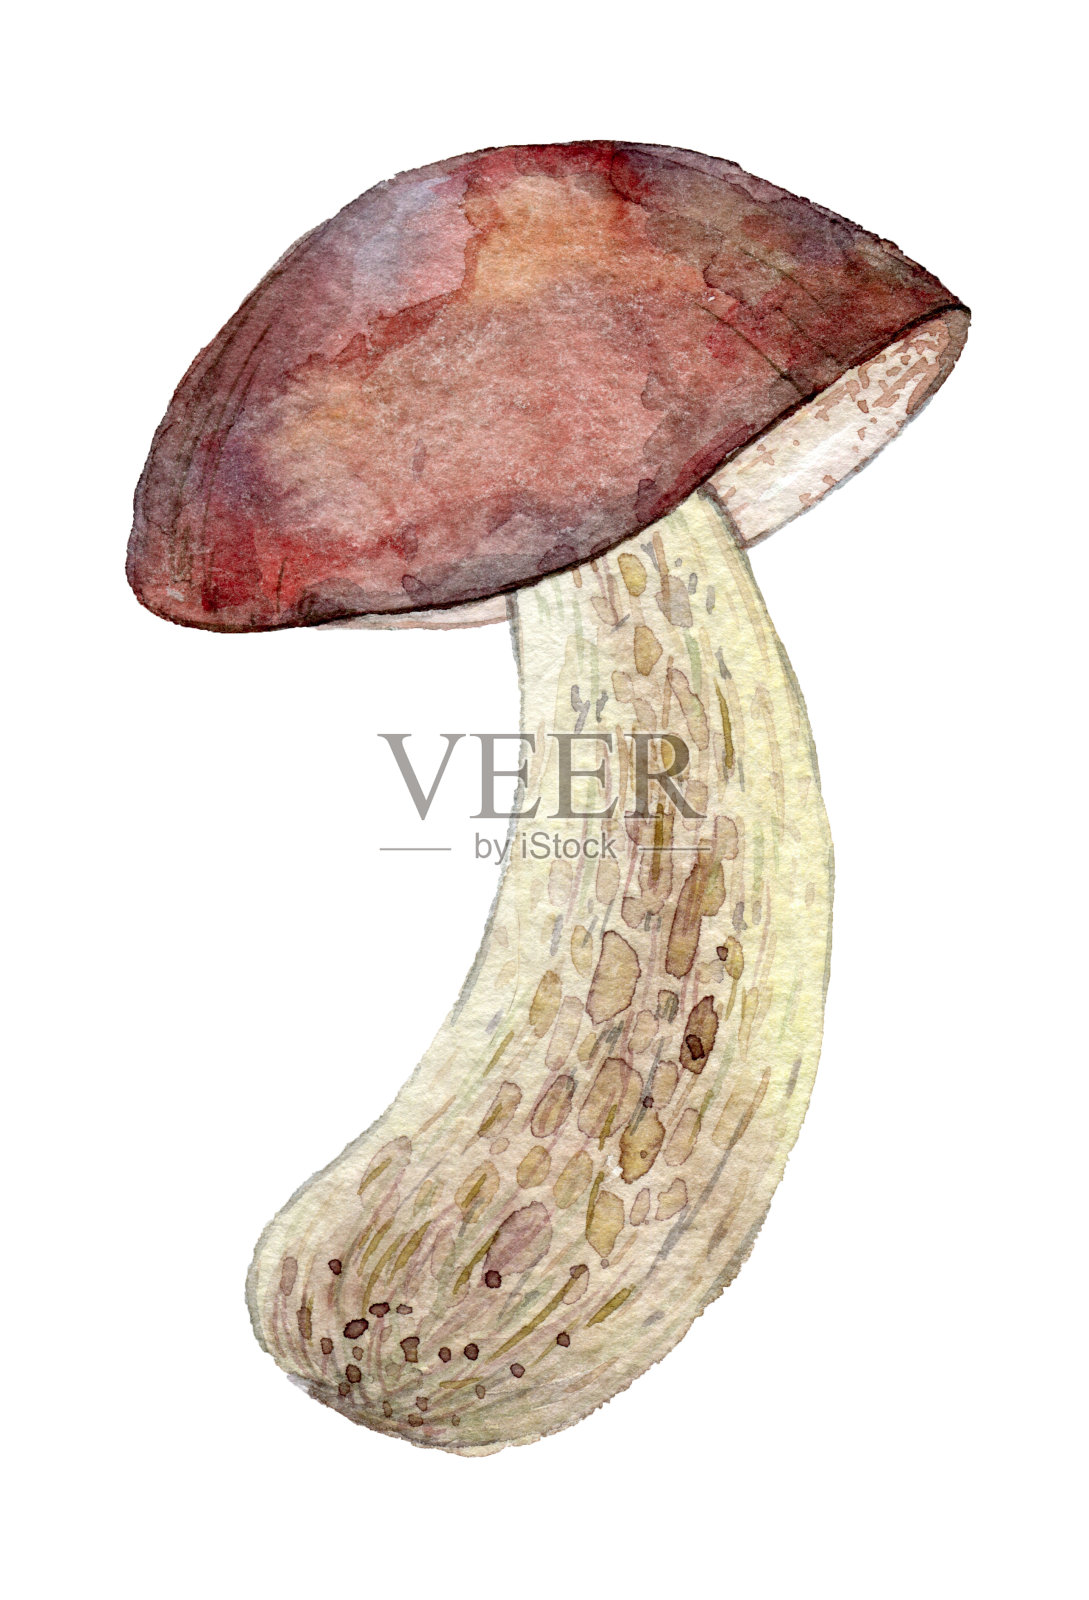 白色背景上画着水彩画中的蘑菇。插画图片素材